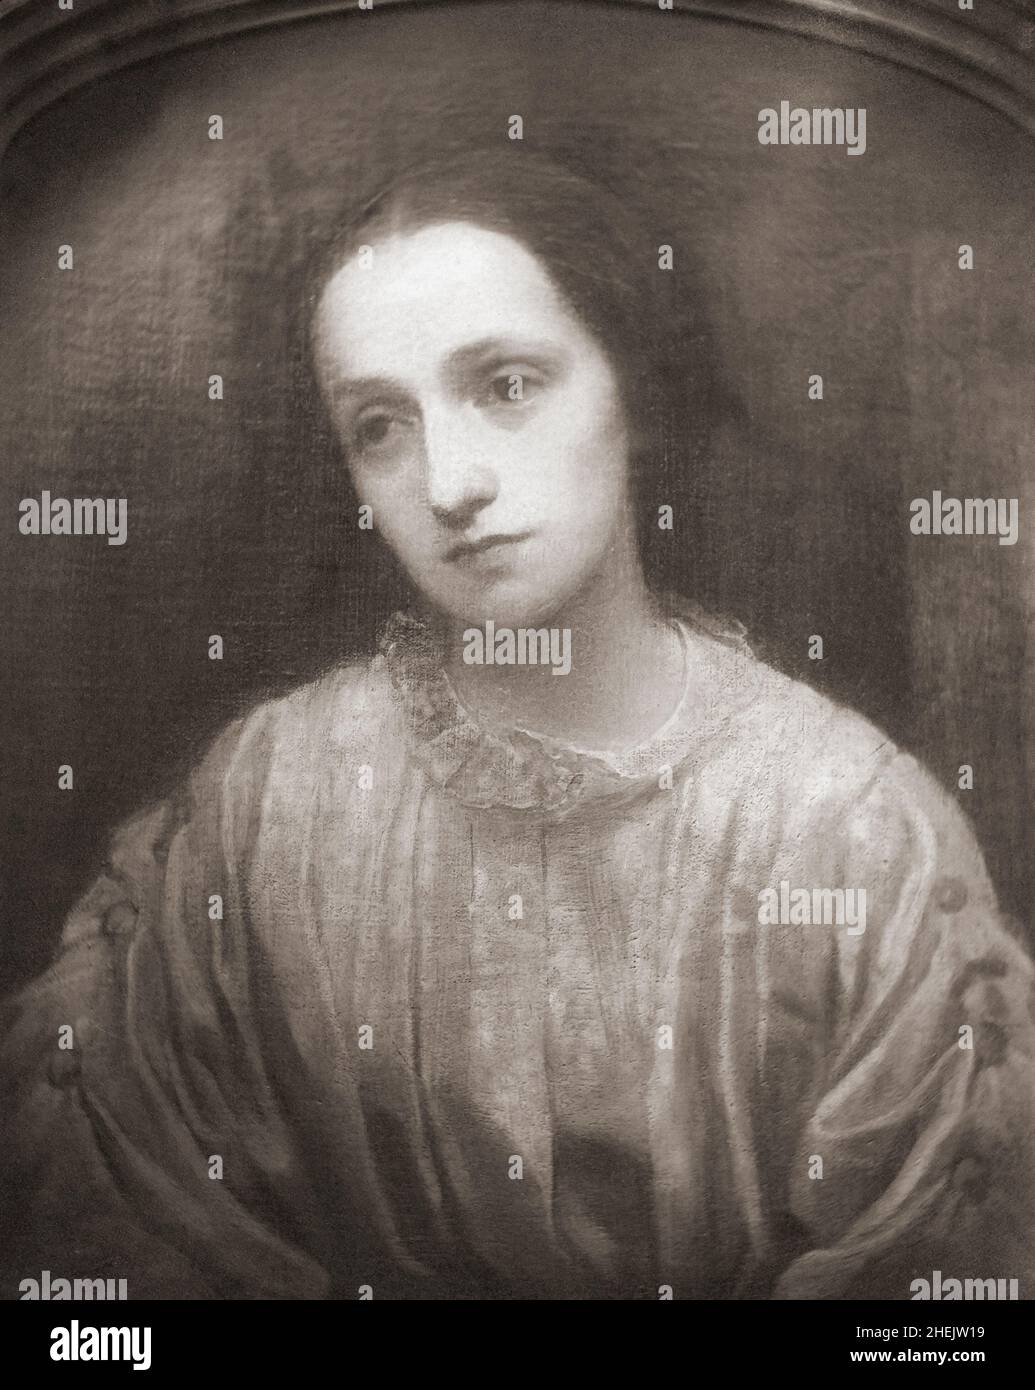 La photographe britannique Julia Margaret Cameron, 1815 - 1879.Après une photographie en noir et blanc d'un tableau créé vers 1850 par l'artiste britannique George Frederic Watts. Banque D'Images